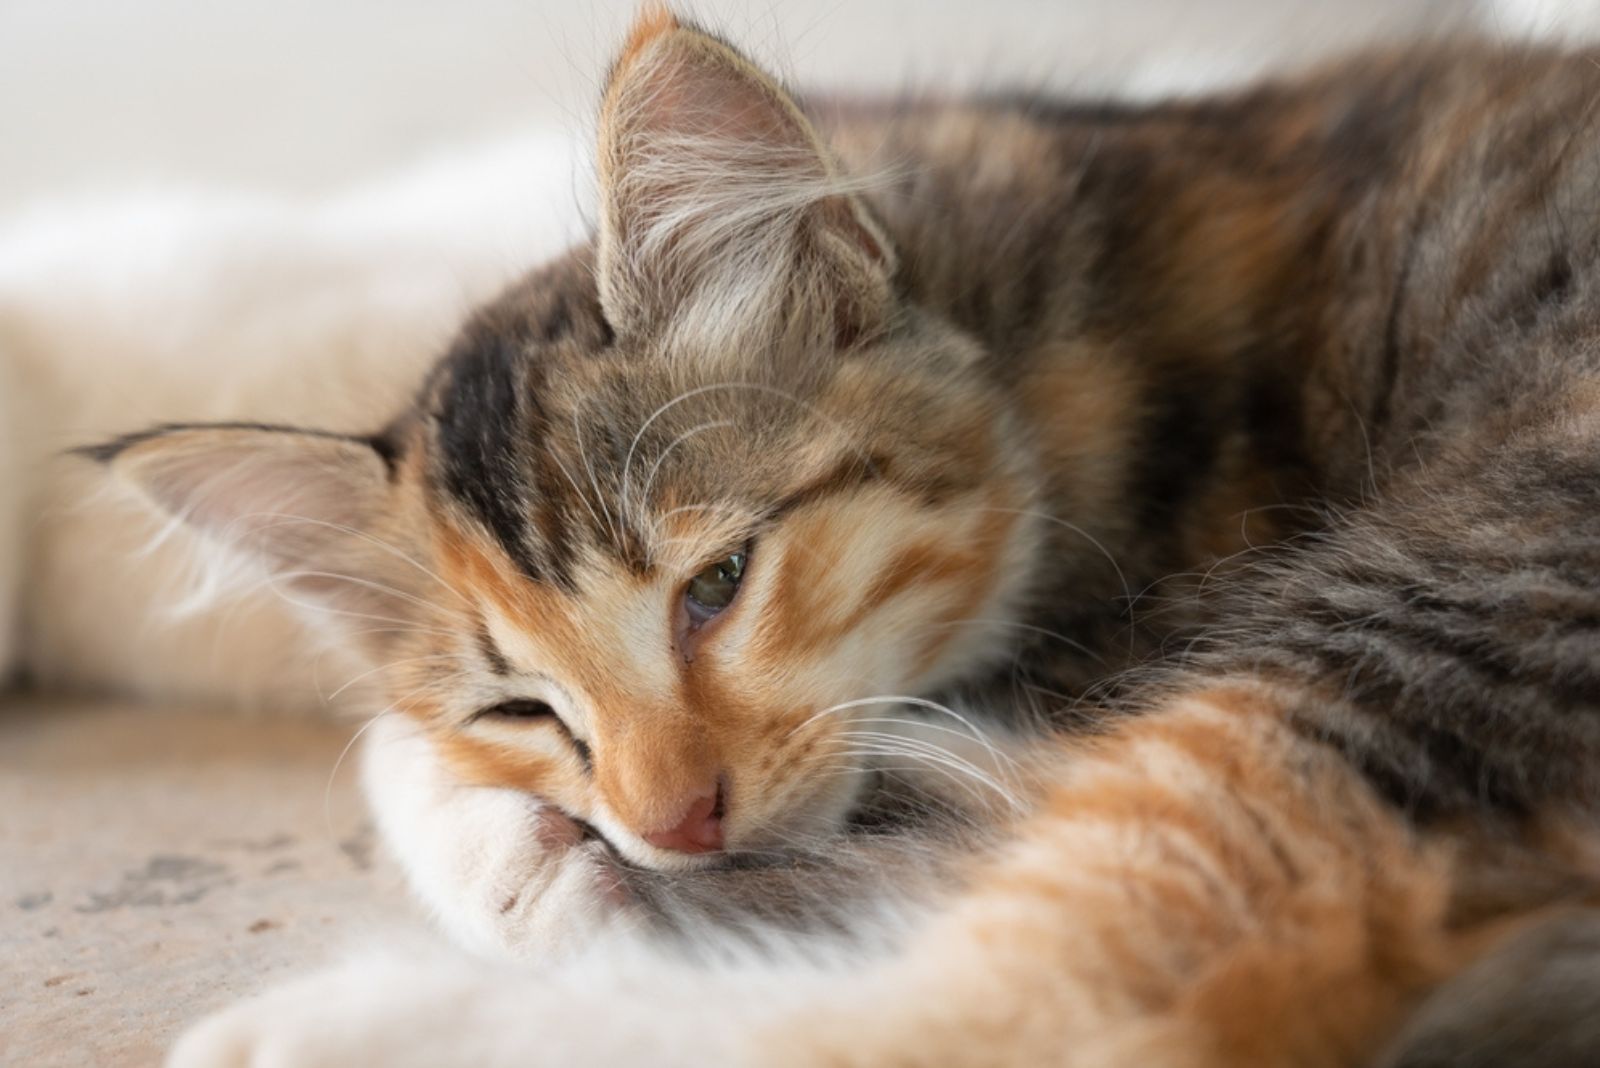 schattig kitten ziet er ziek uit tijdens het leggen